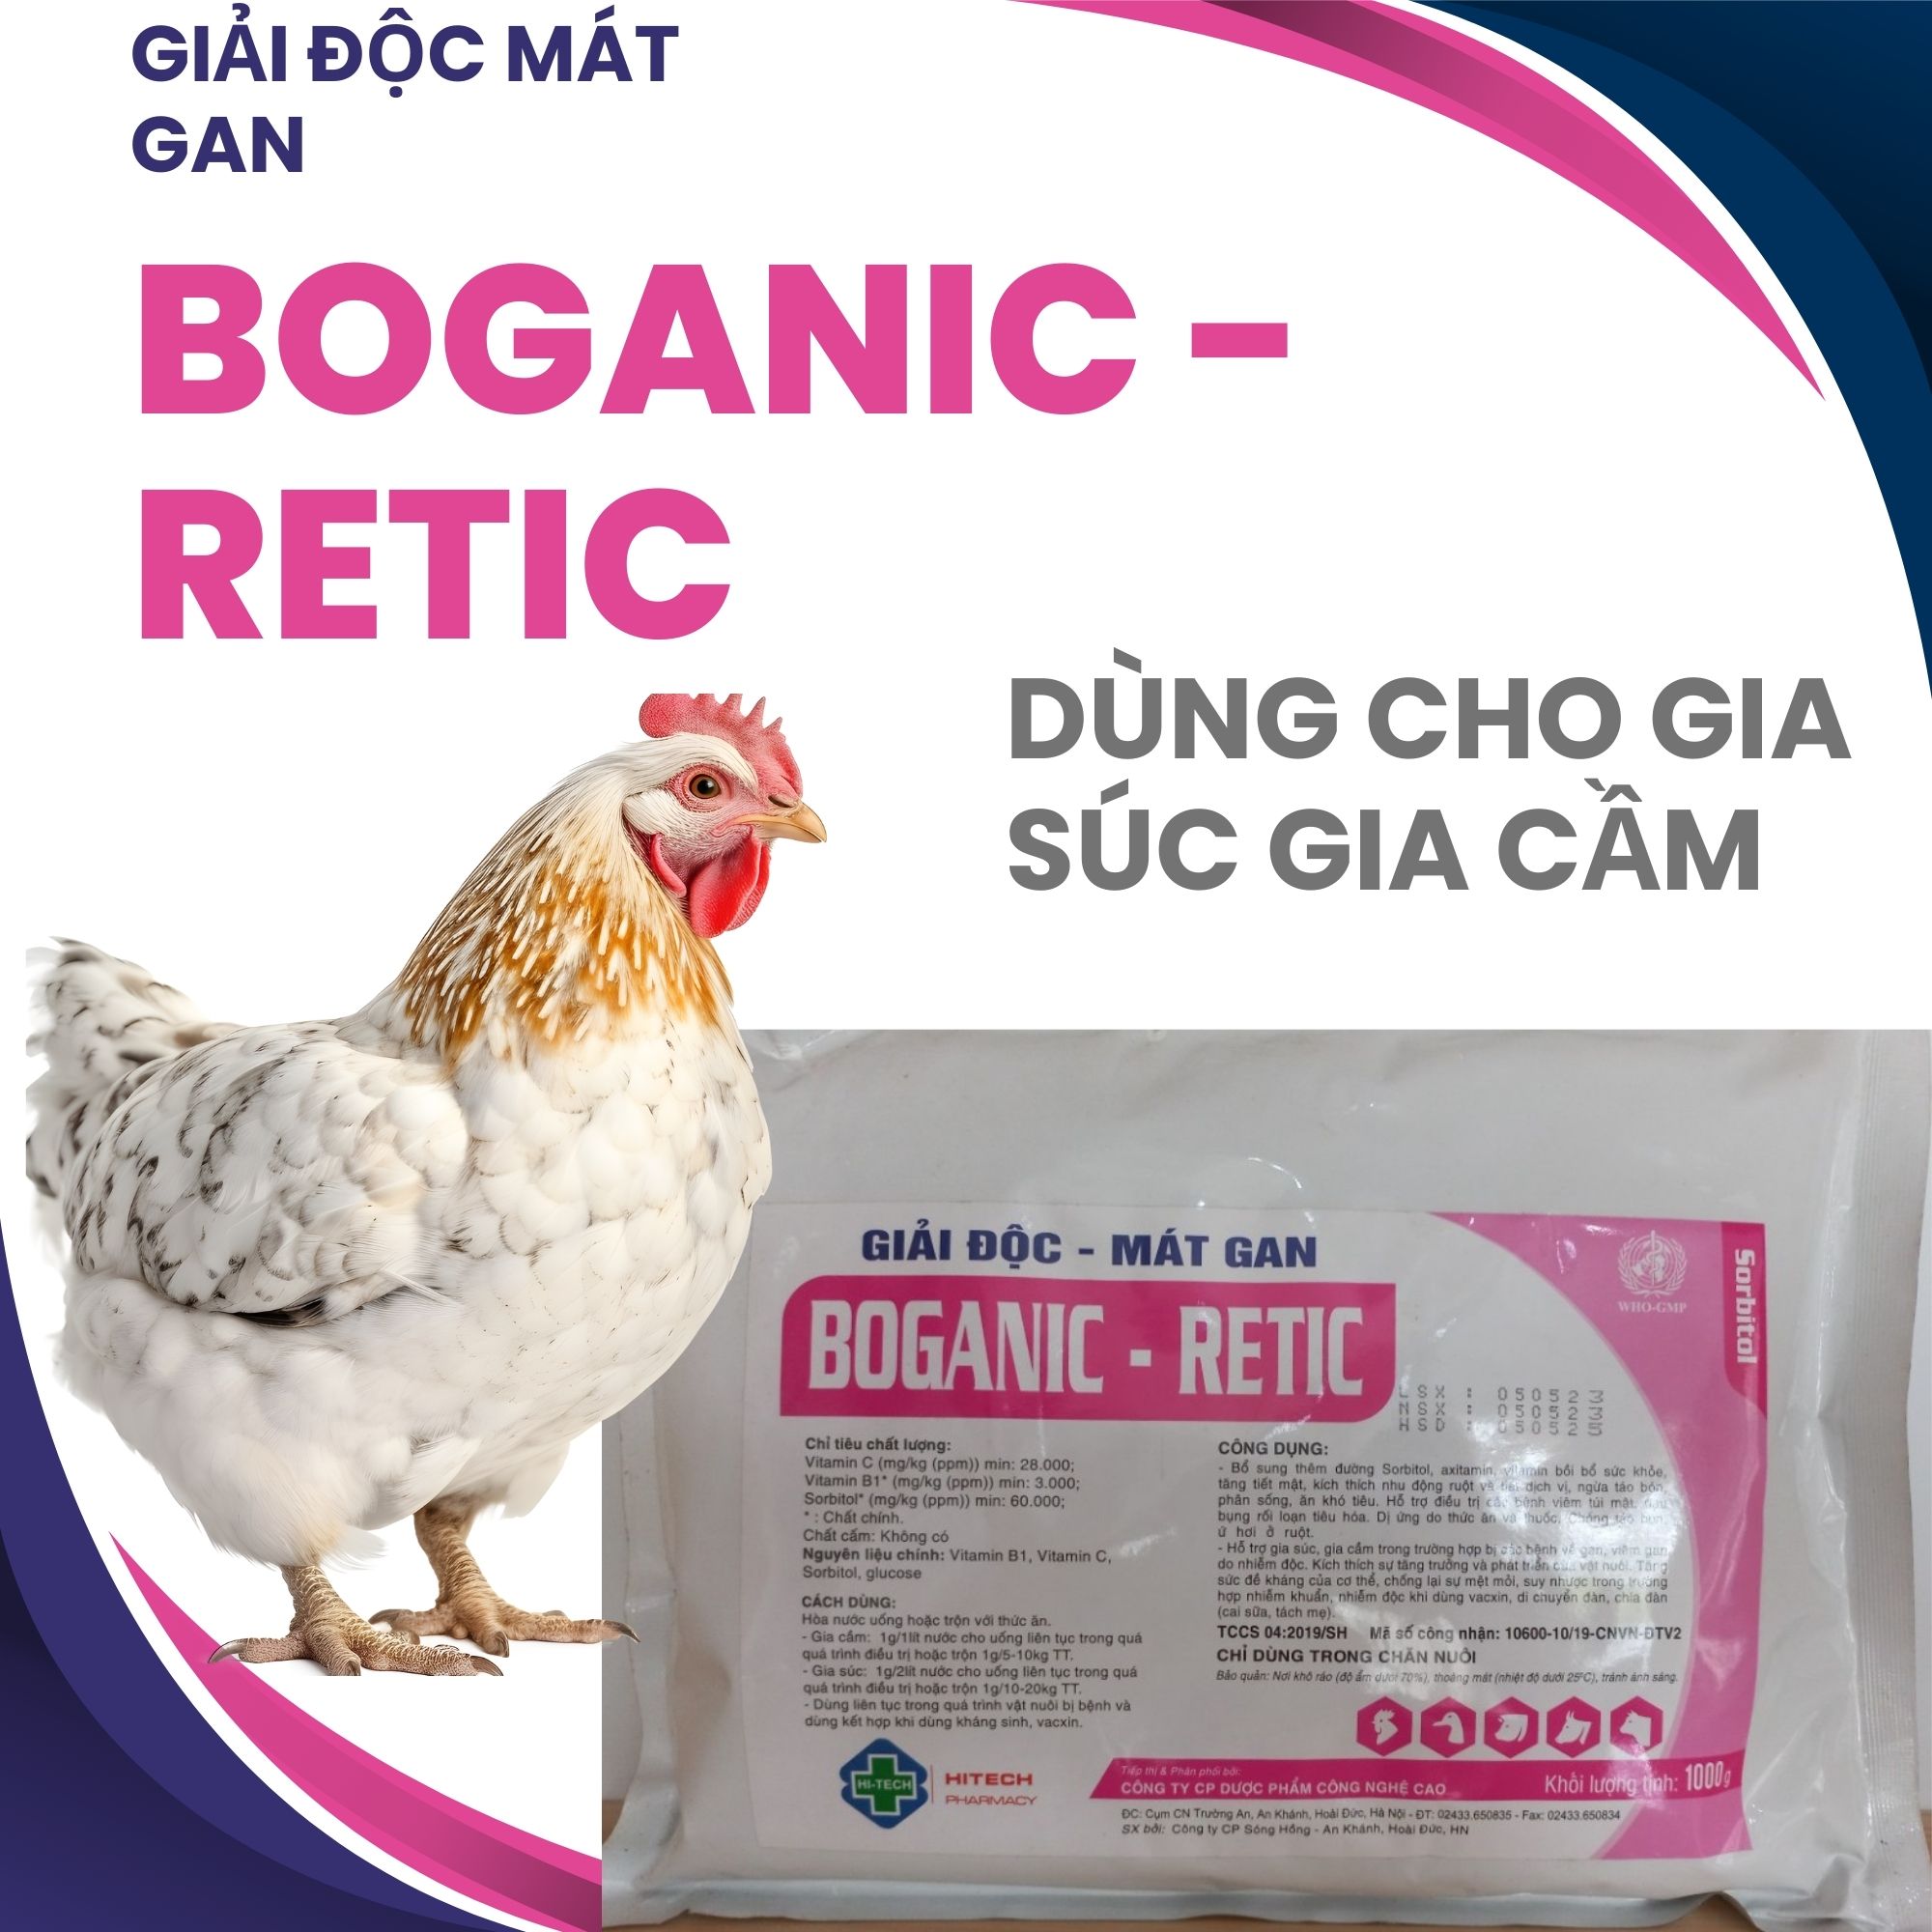 Boganic - Retic giải độc mát gan dành cho gà vịt heo bò